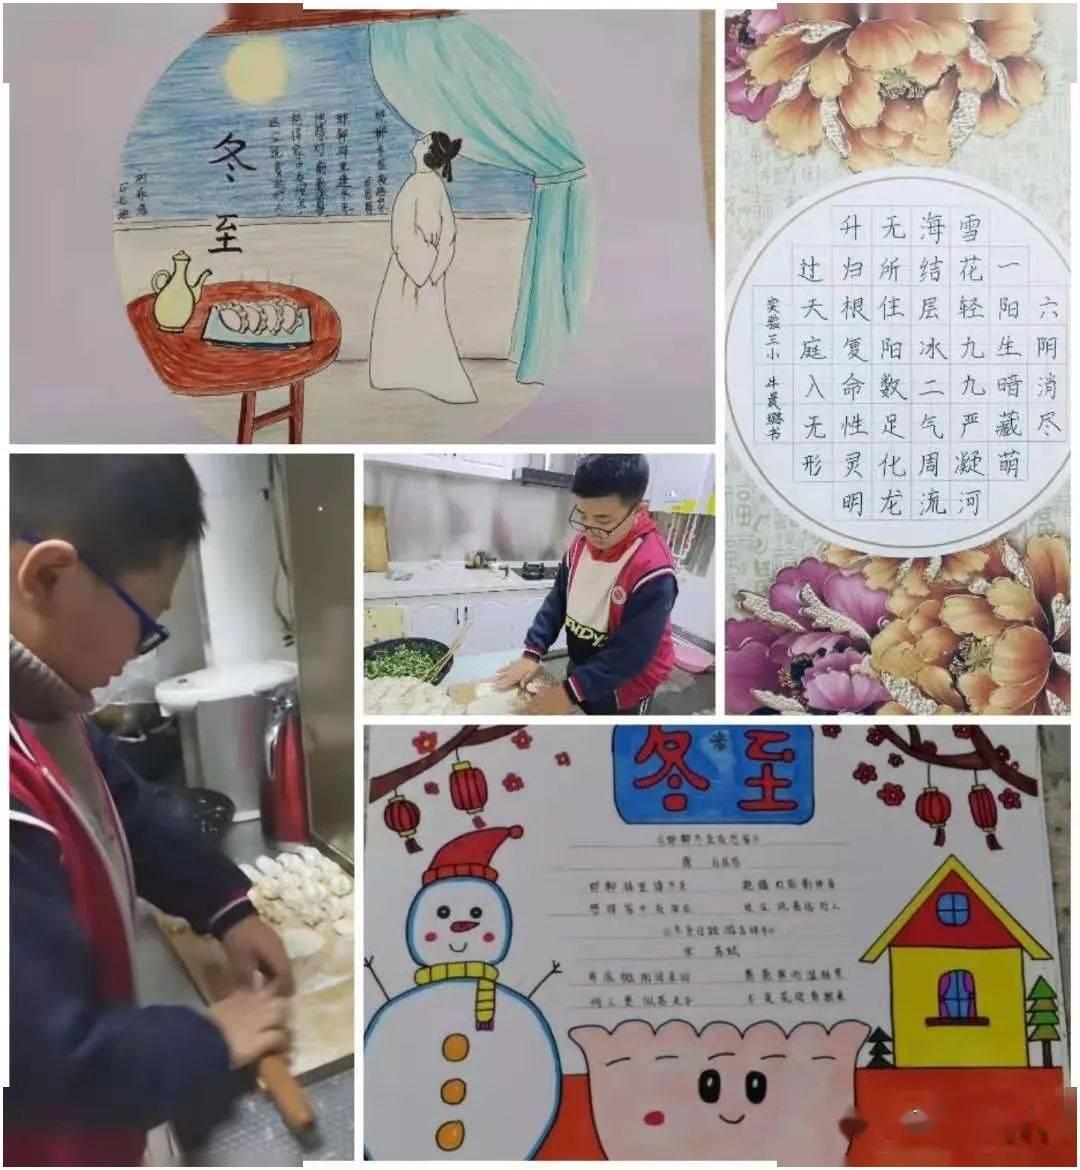 冬至特色作业展:学包饺子,做手抄报,书法,绘画